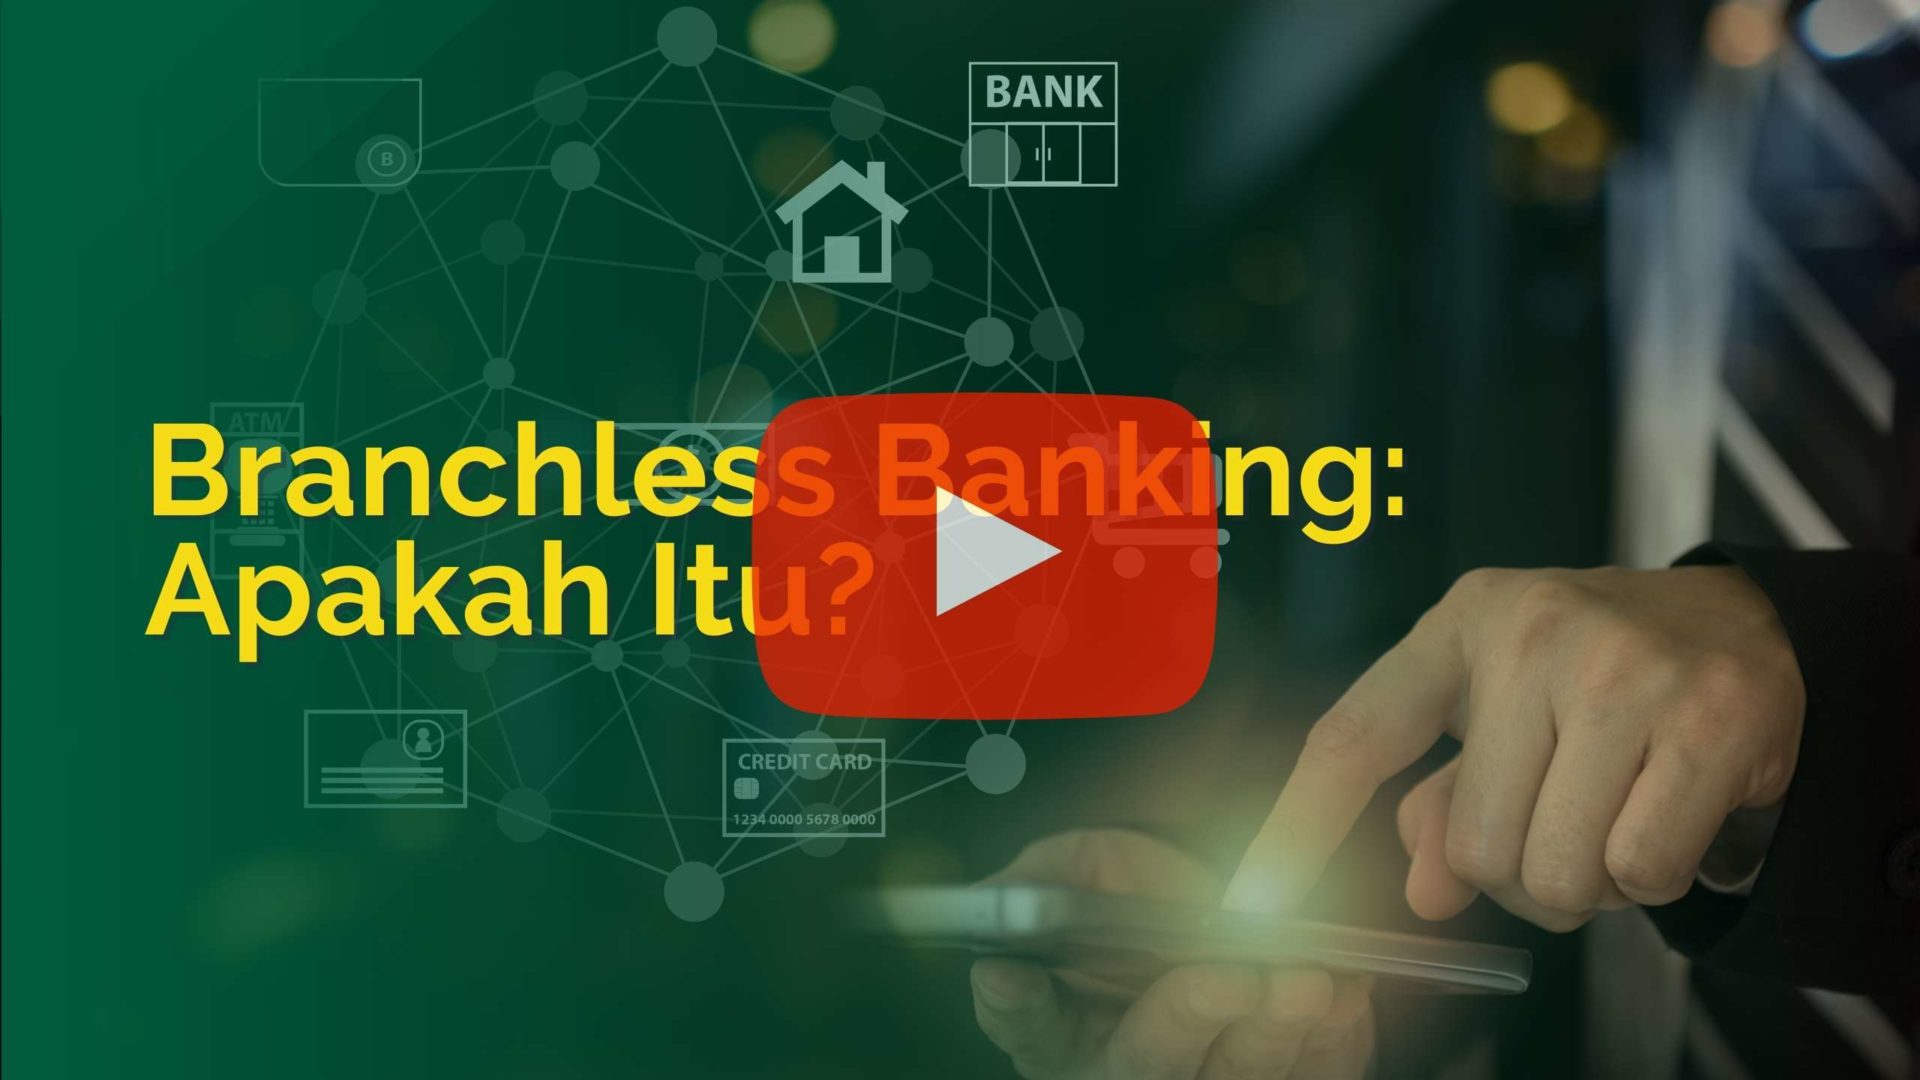 Branchless Banking: Apakah Itu?